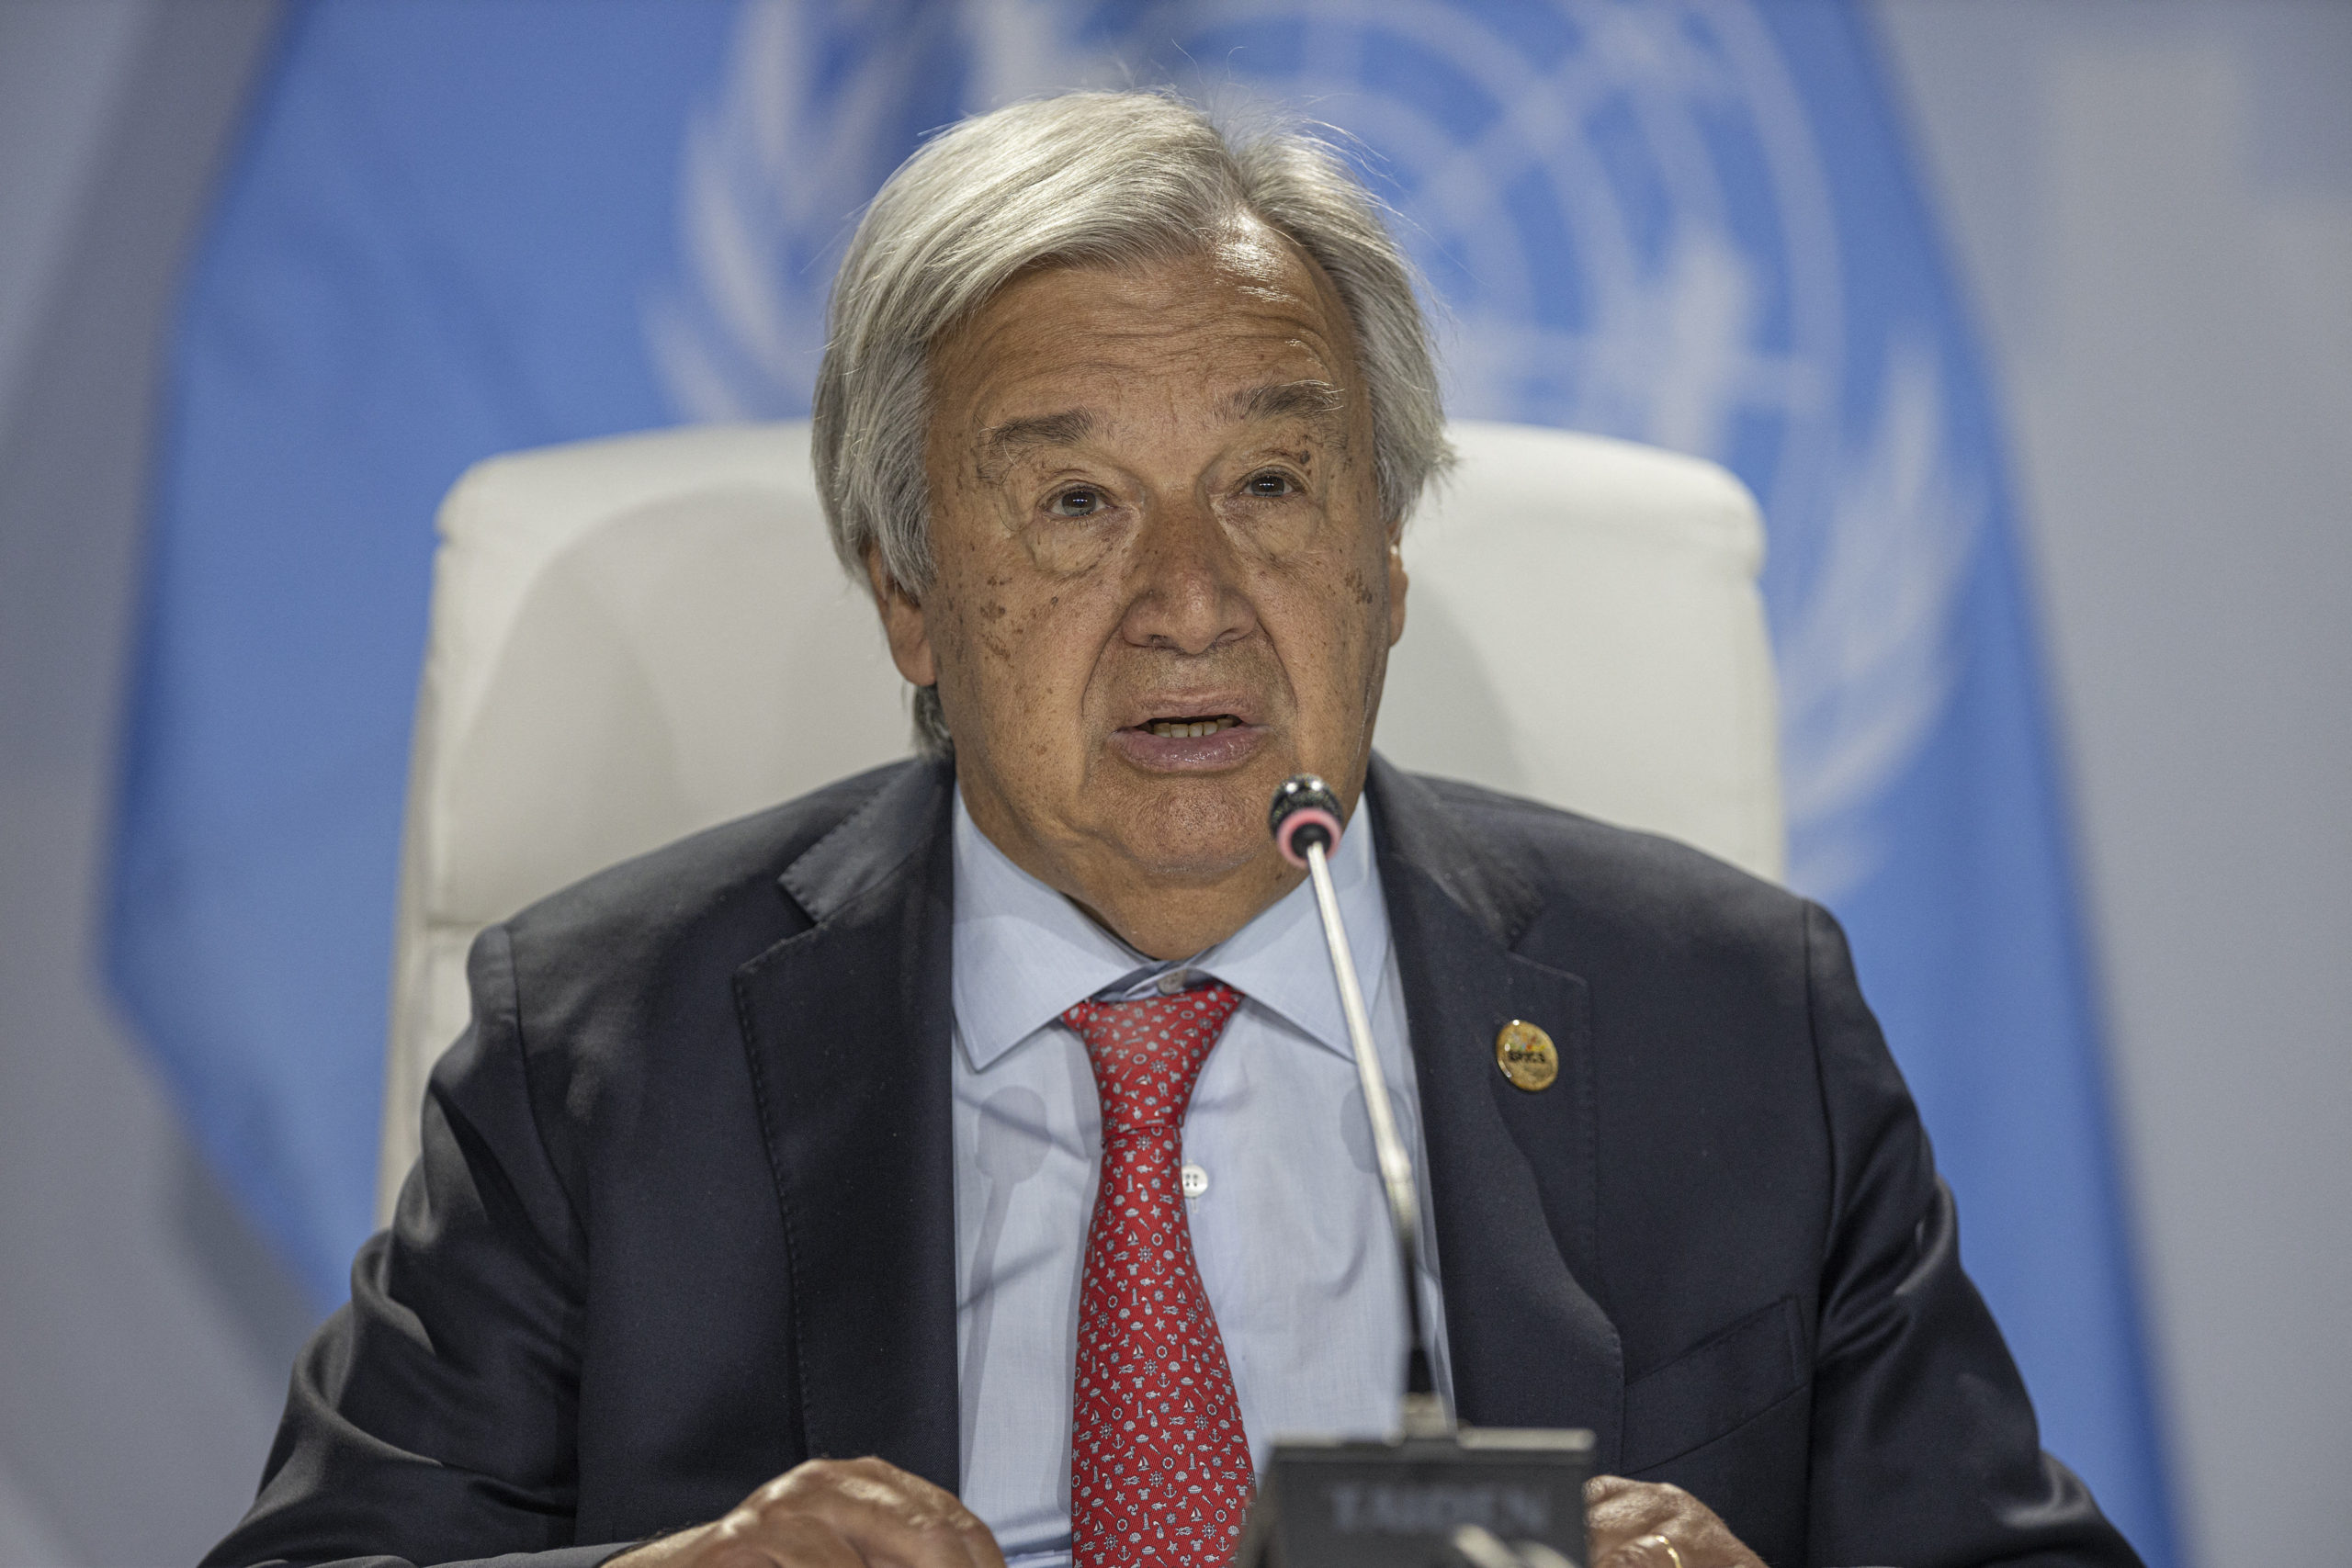 Élesen bírálta a humanitárius jog megsértését az ENSZ-főtitkár